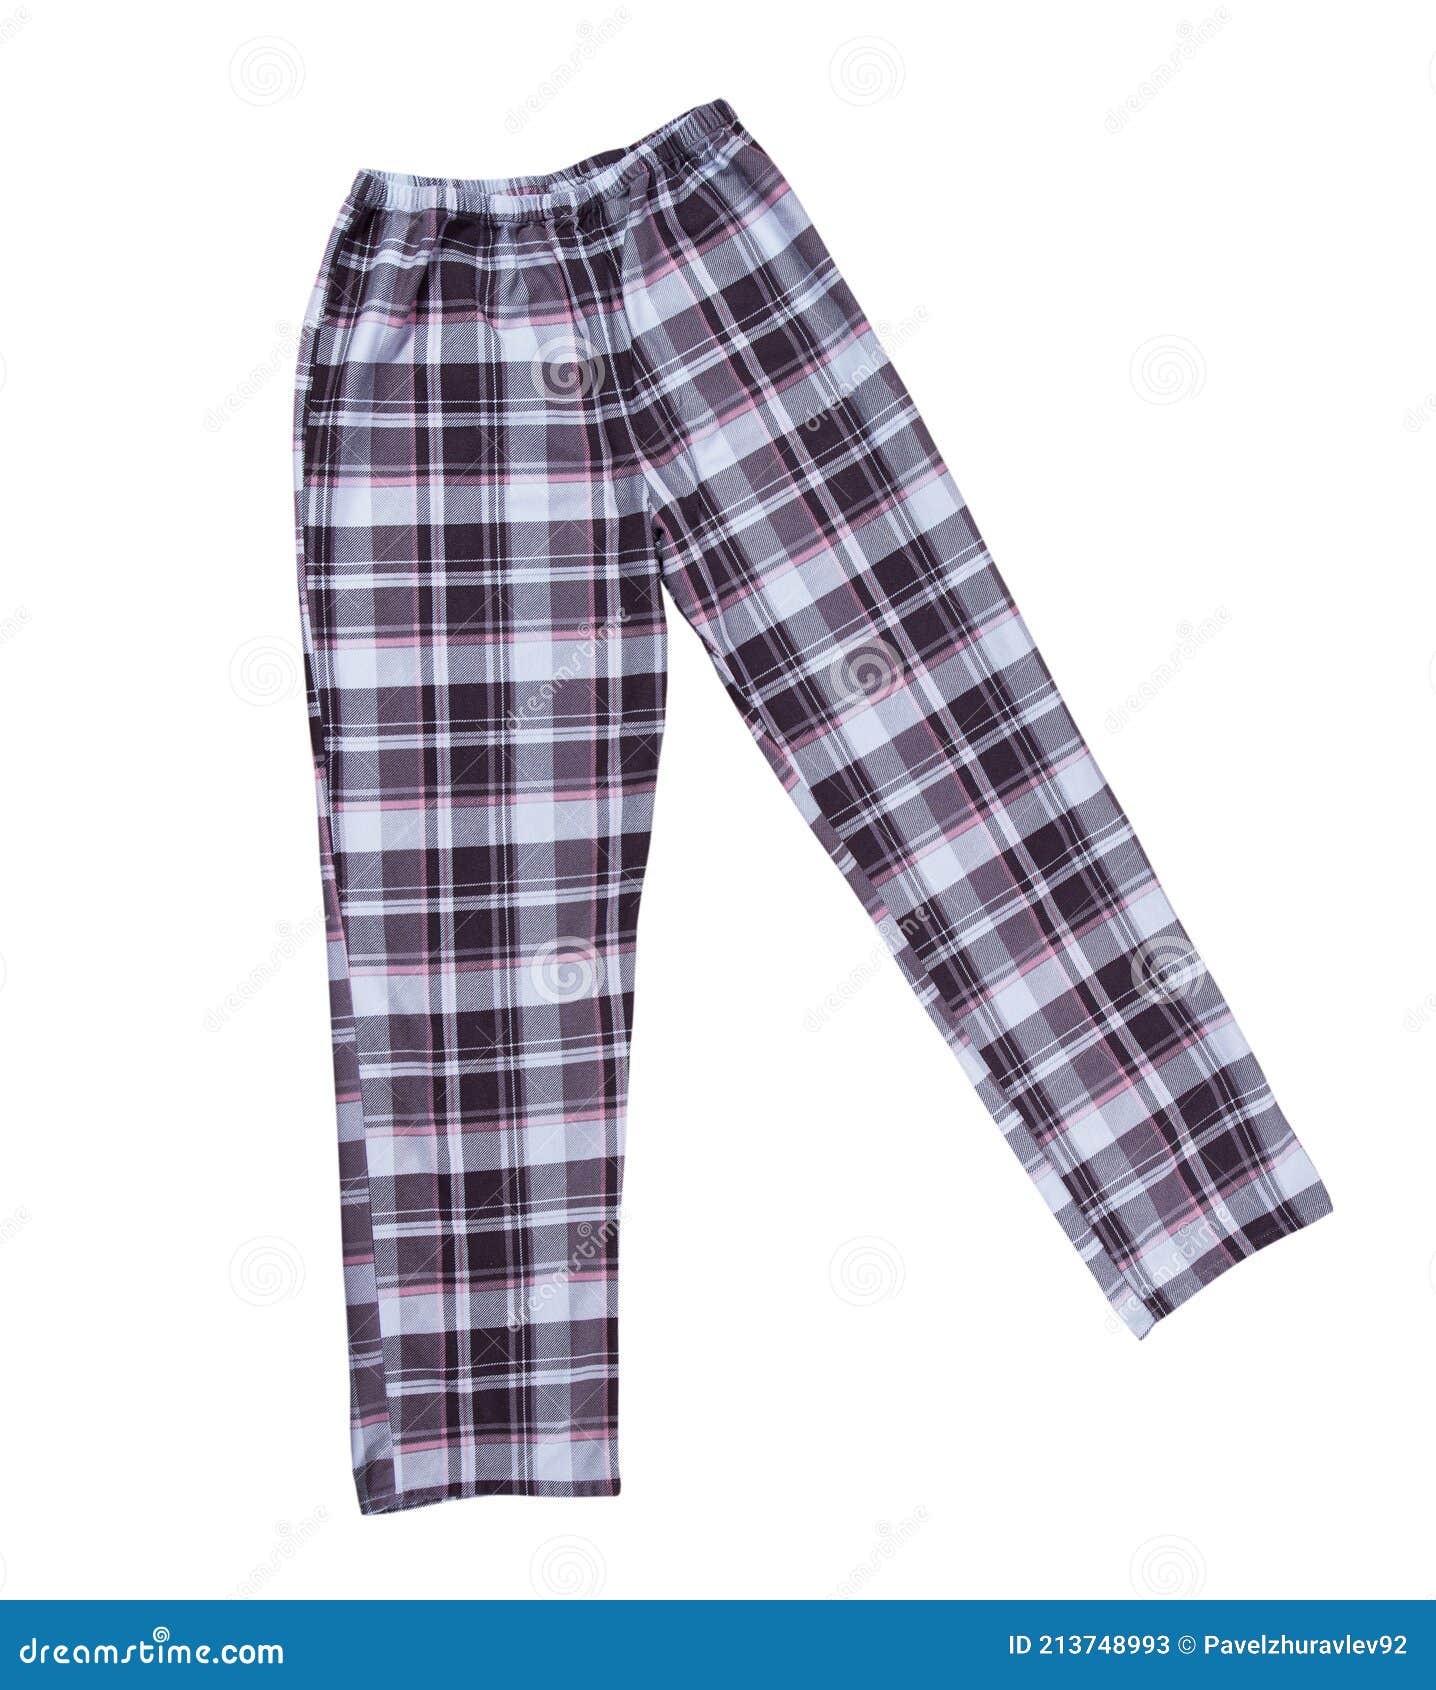 Pantalones De Pijama a Cuadros Aislado Ropa De Dormir Cerrar archivo - Imagen de nightwear, textil: 213748993